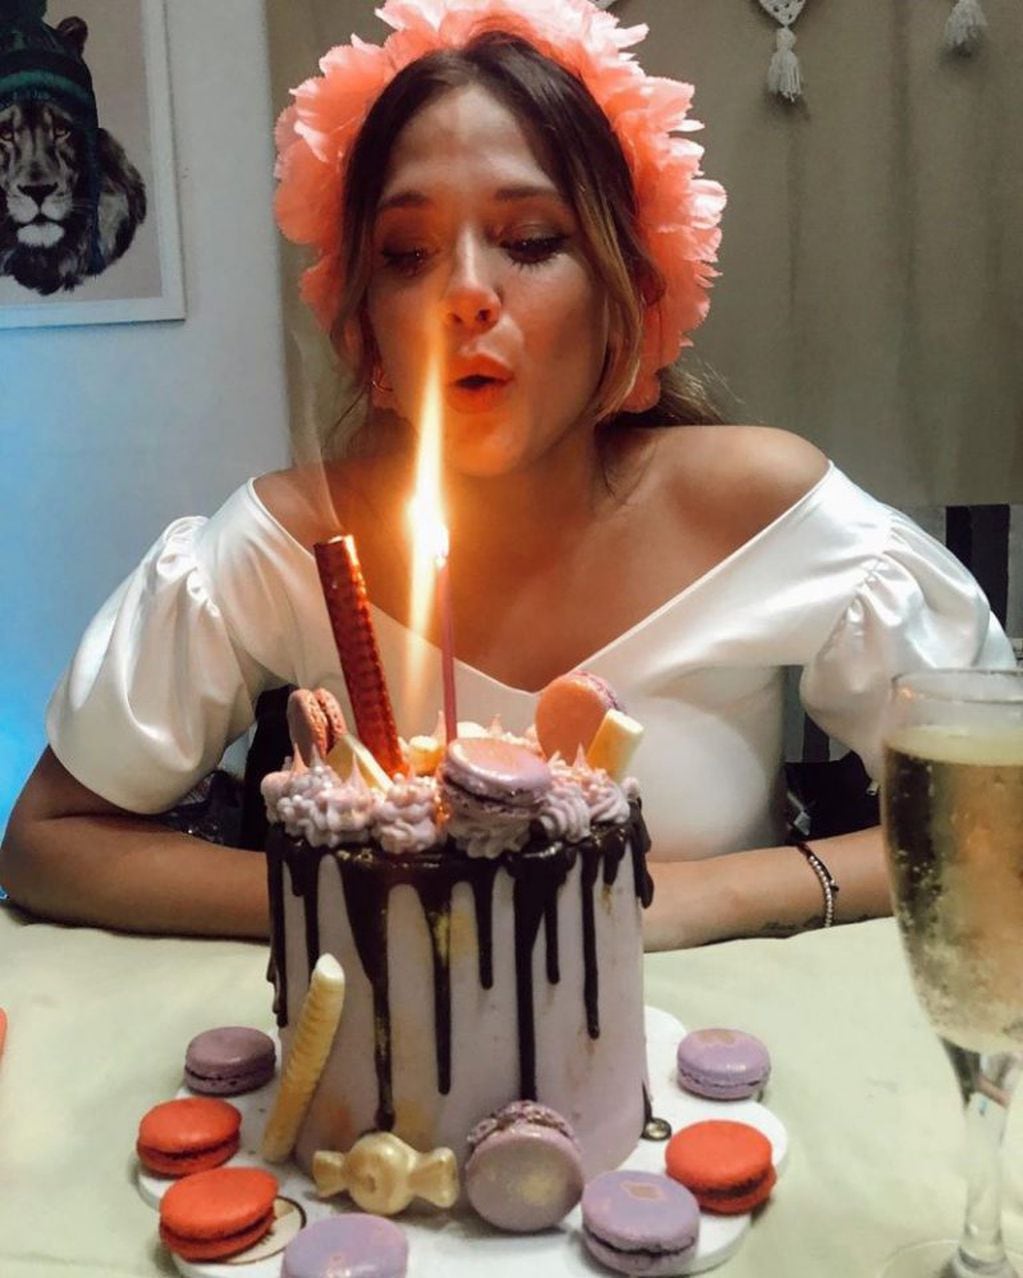 Nazarena compartió a través de Instagram Stories fotos y videos del cumpleaños de su hija.